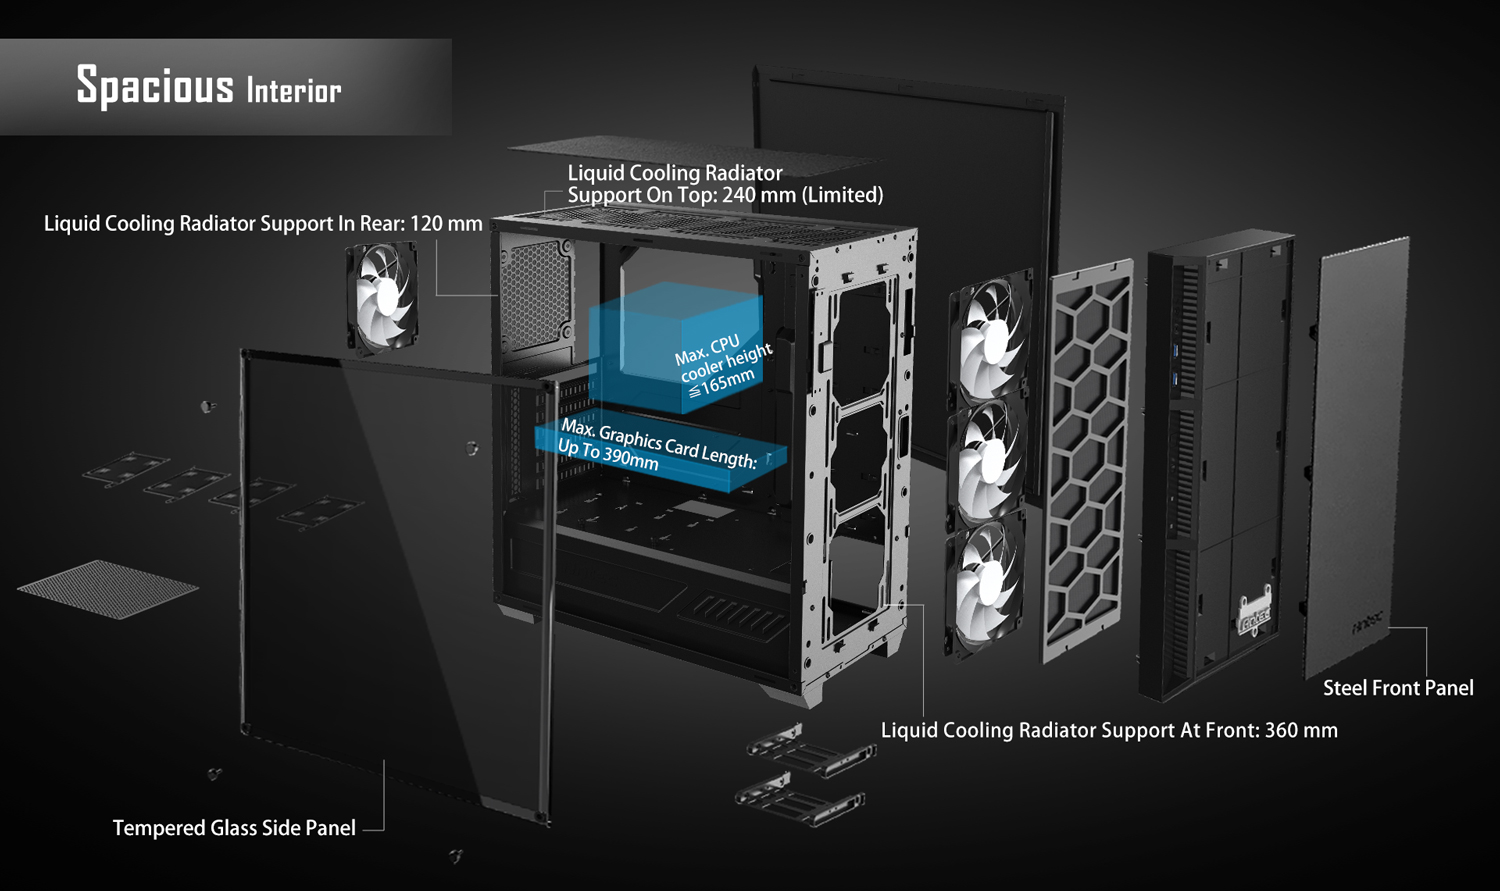 5 Ascenti Resources เปิดตัว เคส Antec P8 Performance Series เคสฟังก์ชั่นดีโดนใจ ฝาข้าง Tempered Glass พัดลม LED 3 ตัว ราคาสุดคุ้ม